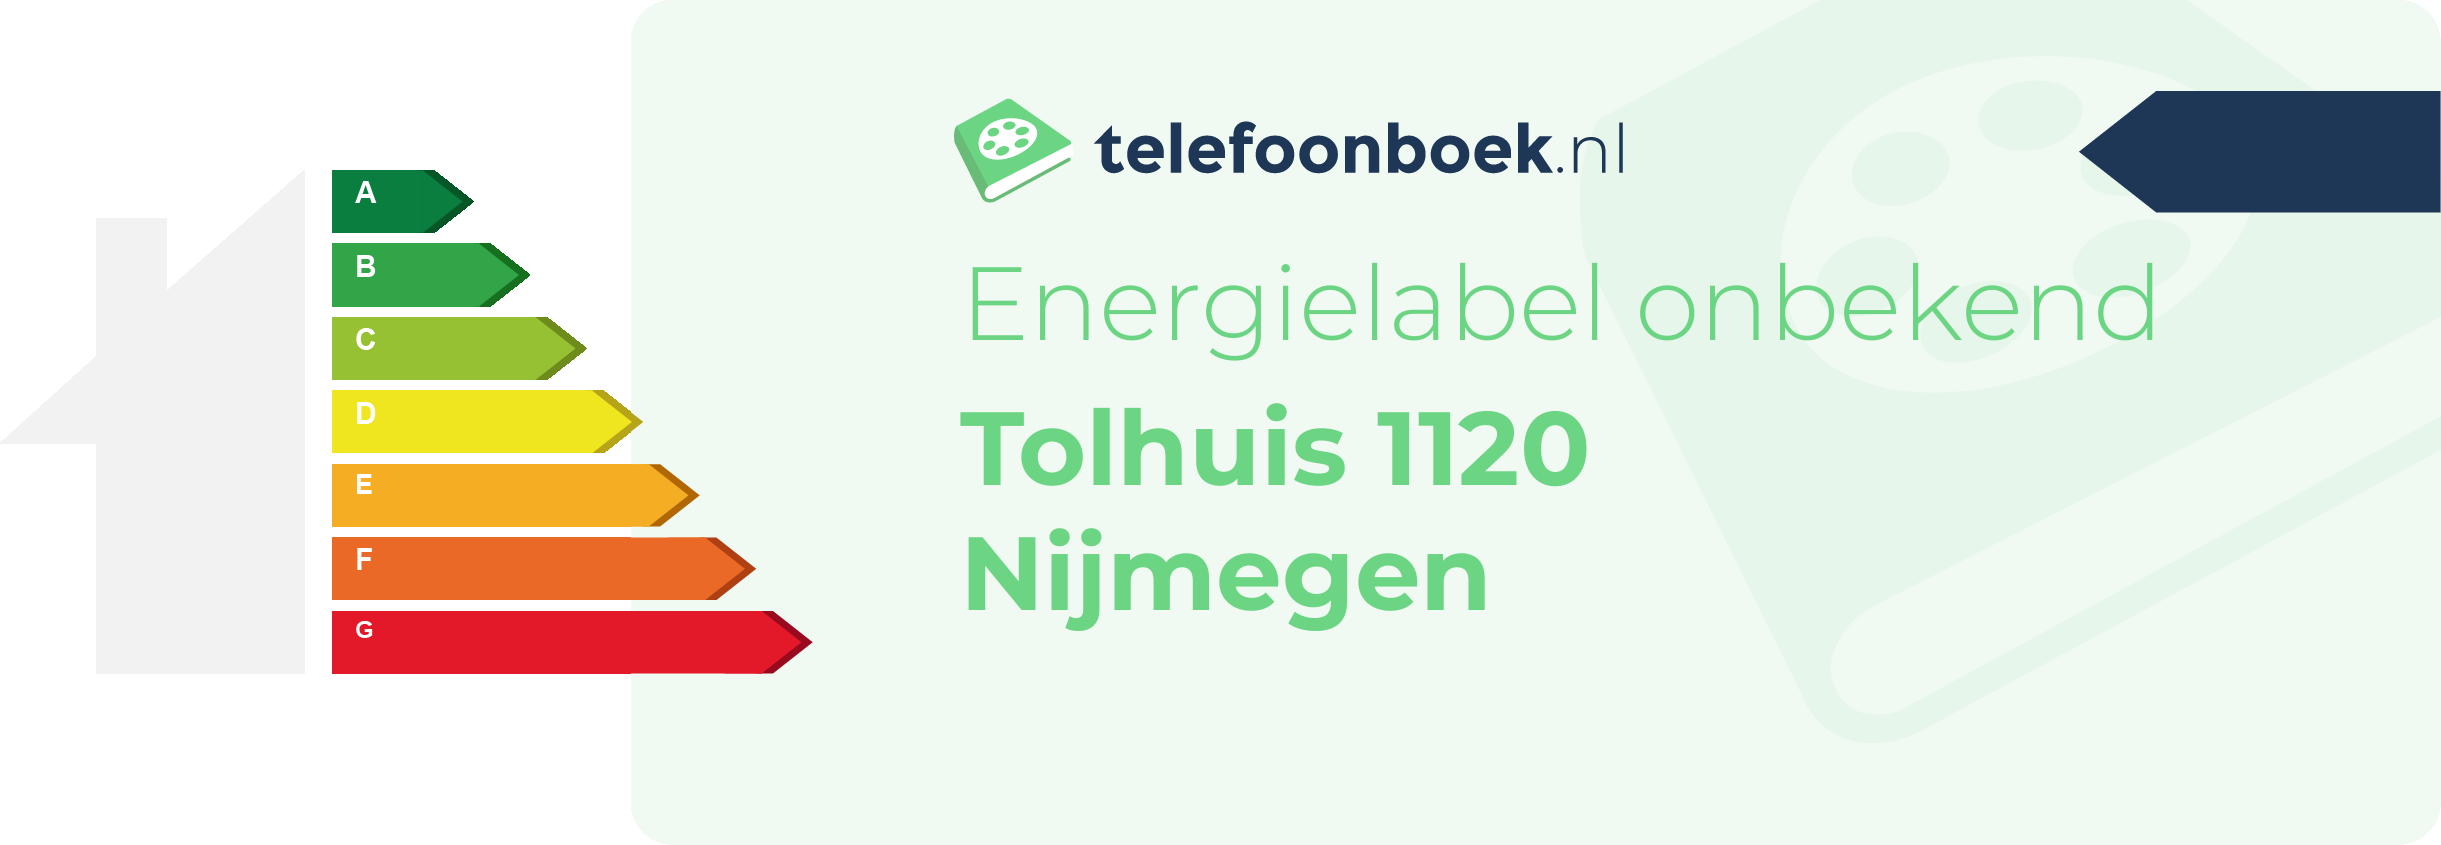 Energielabel Tolhuis 1120 Nijmegen